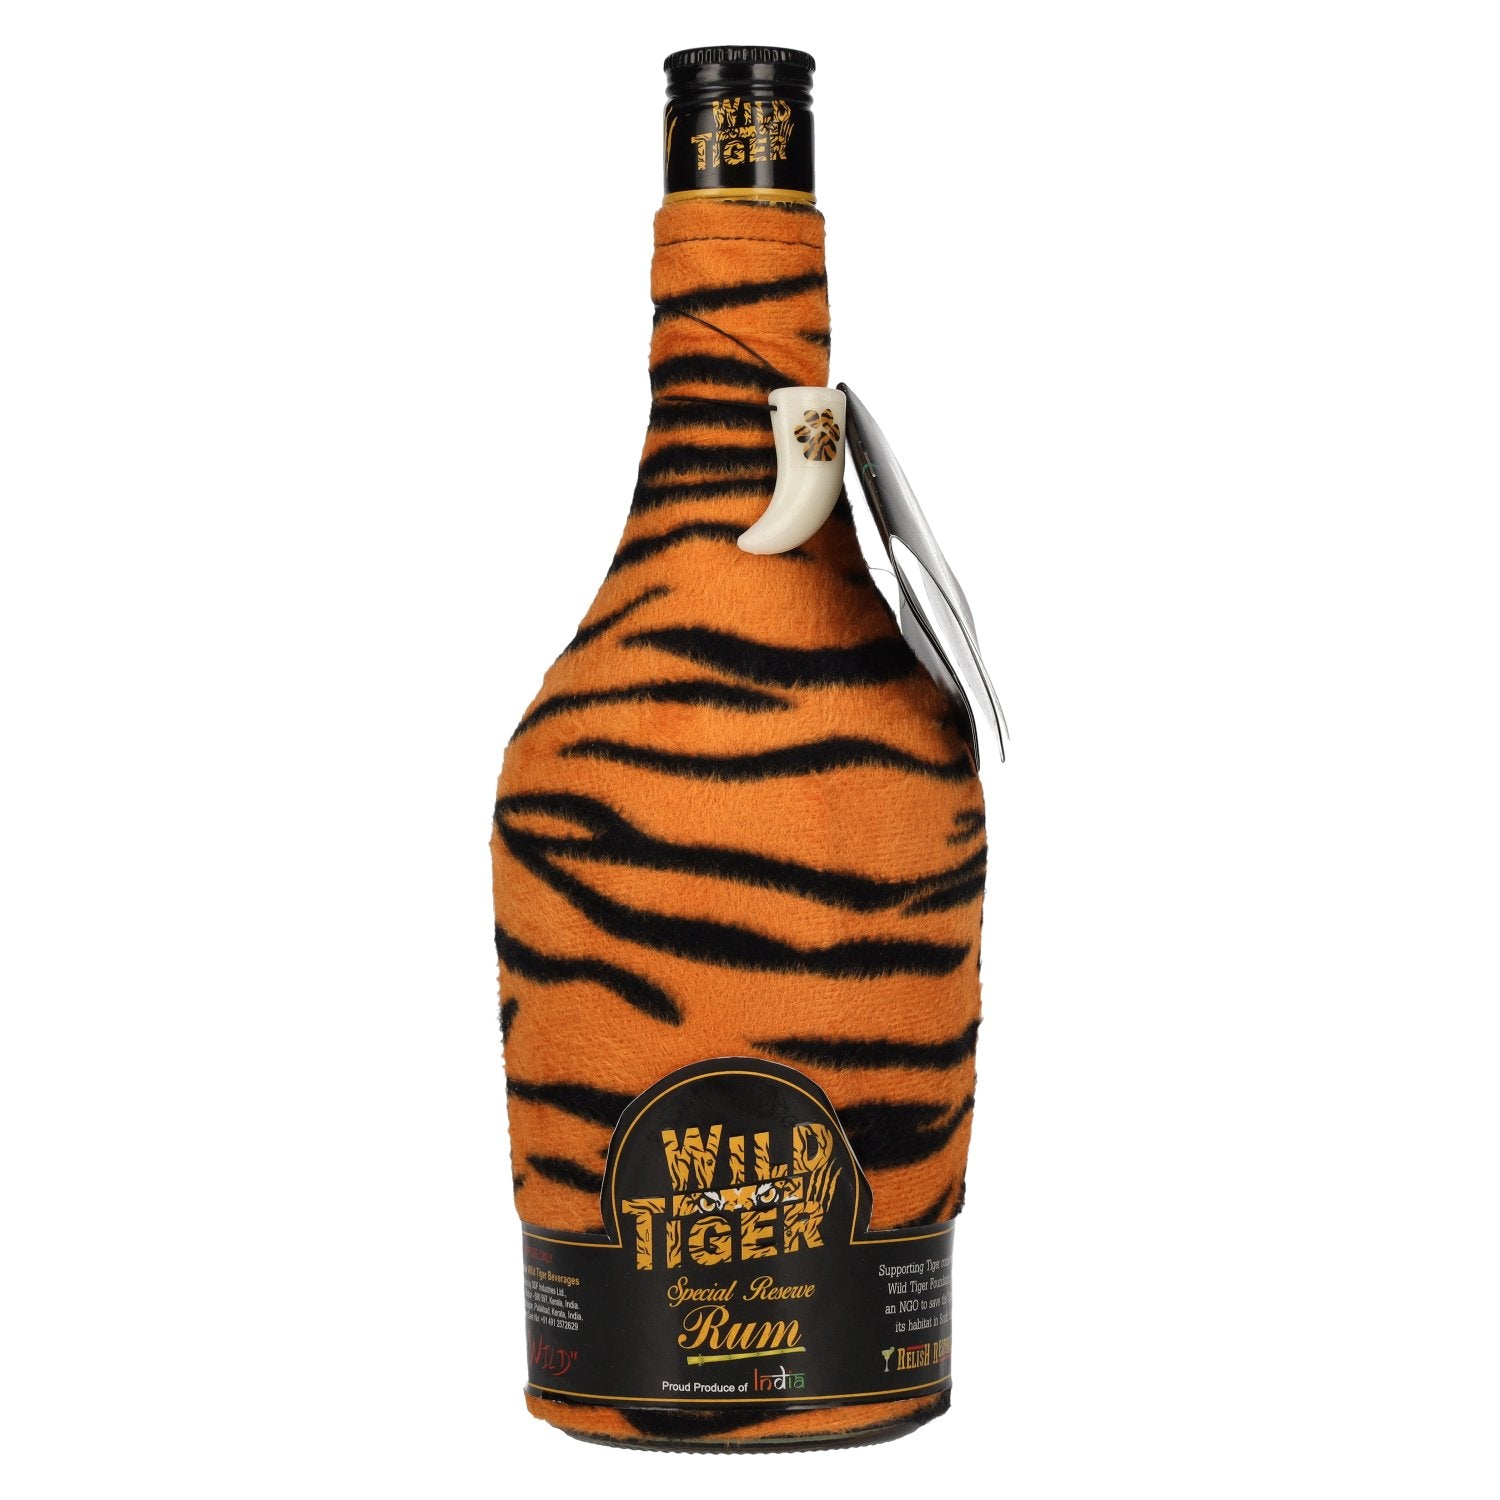 Wild Tiger Special Reserve Rum 40% Vol. 0,7l